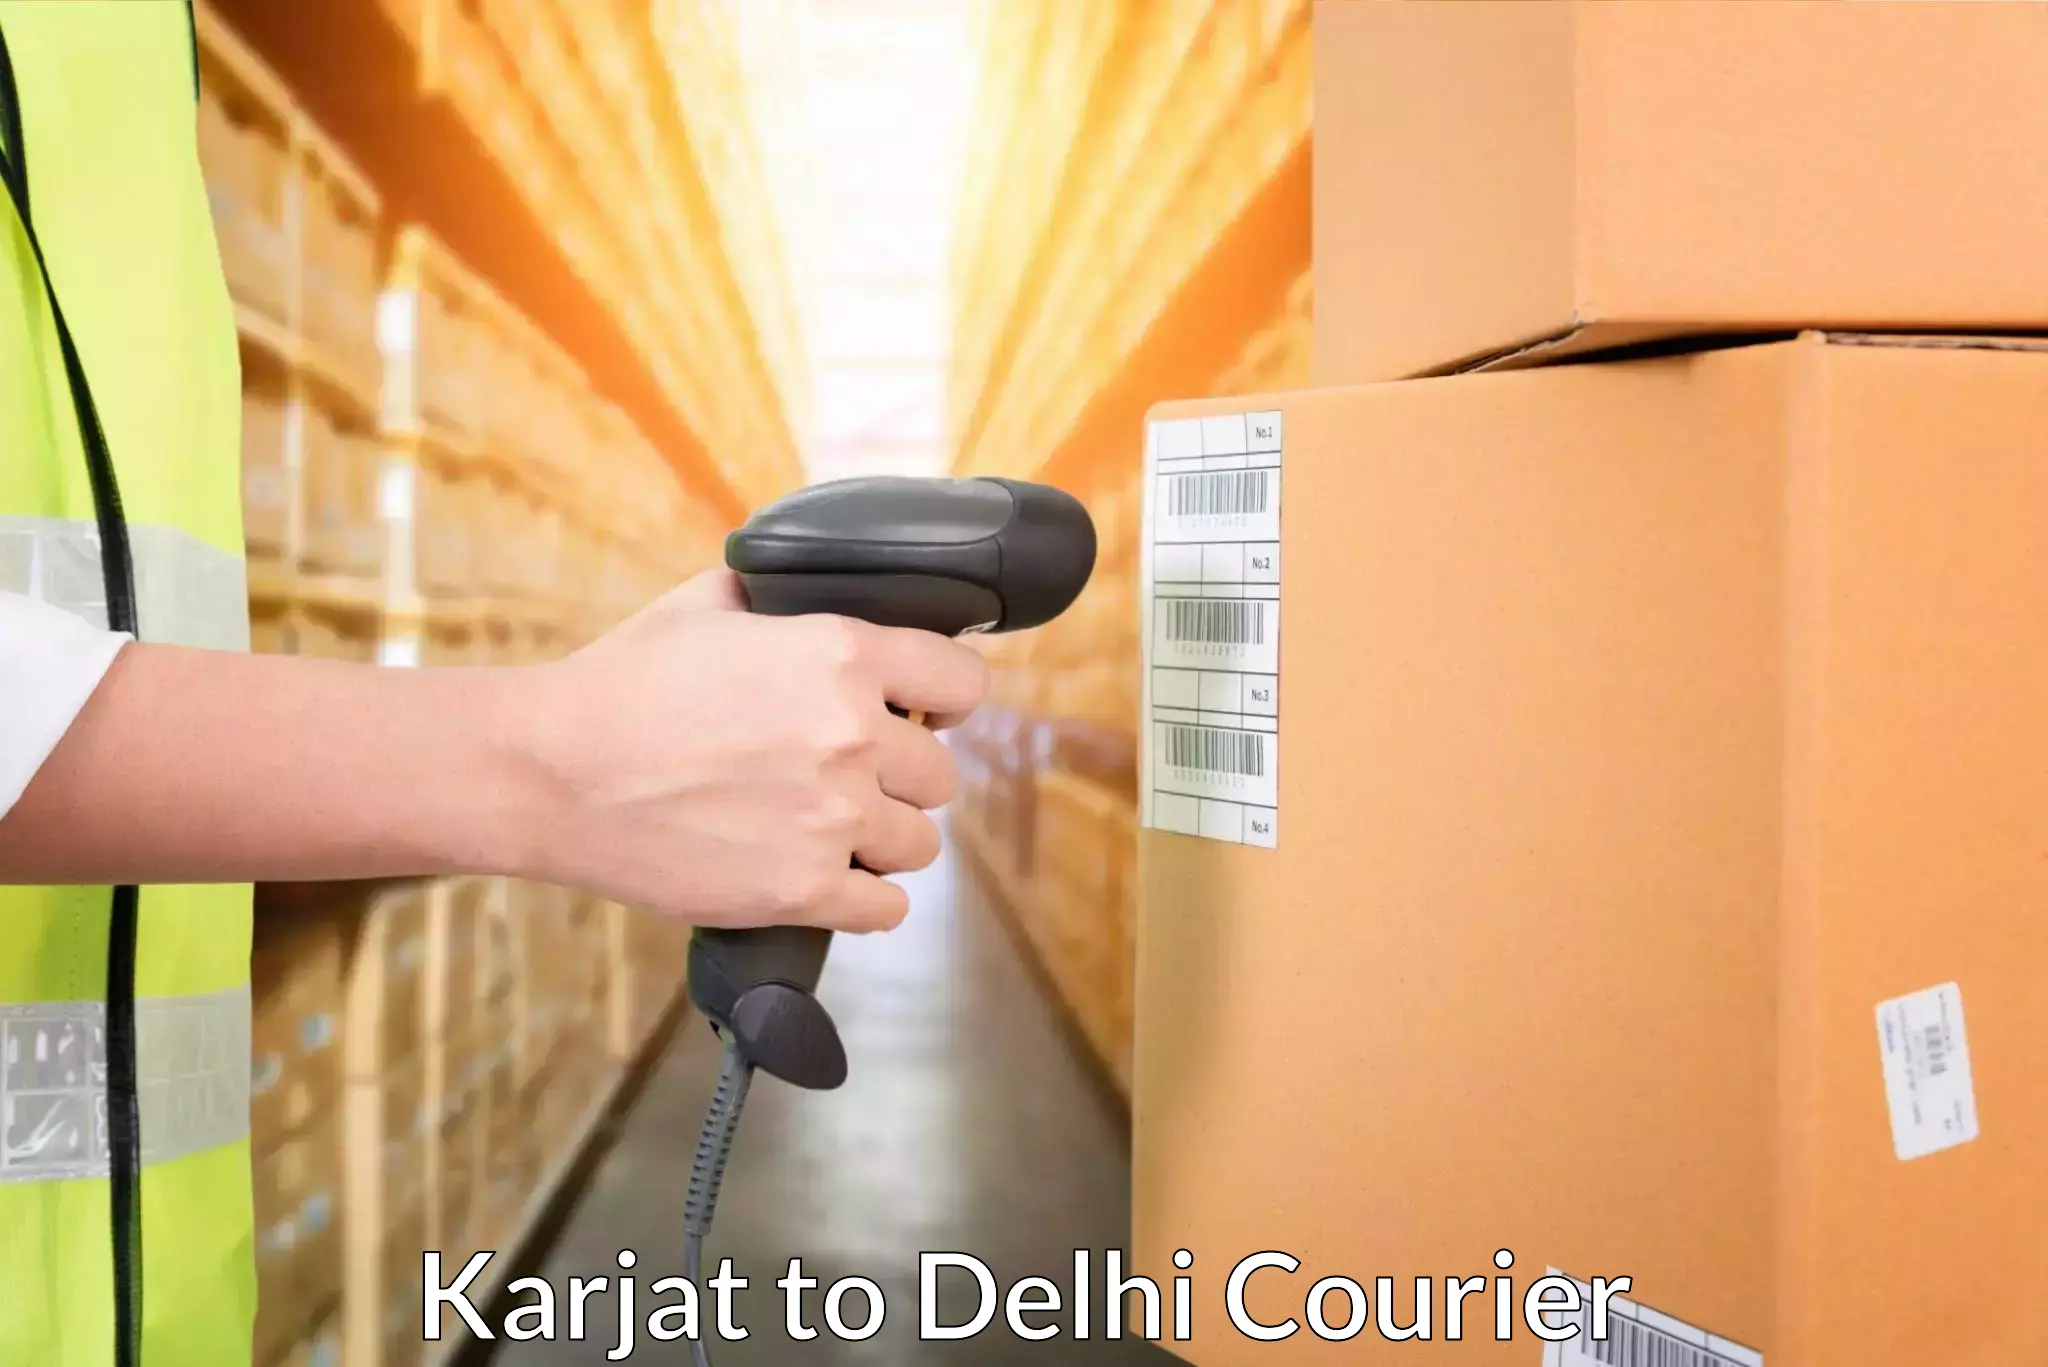 Courier service comparison Karjat to Jhilmil